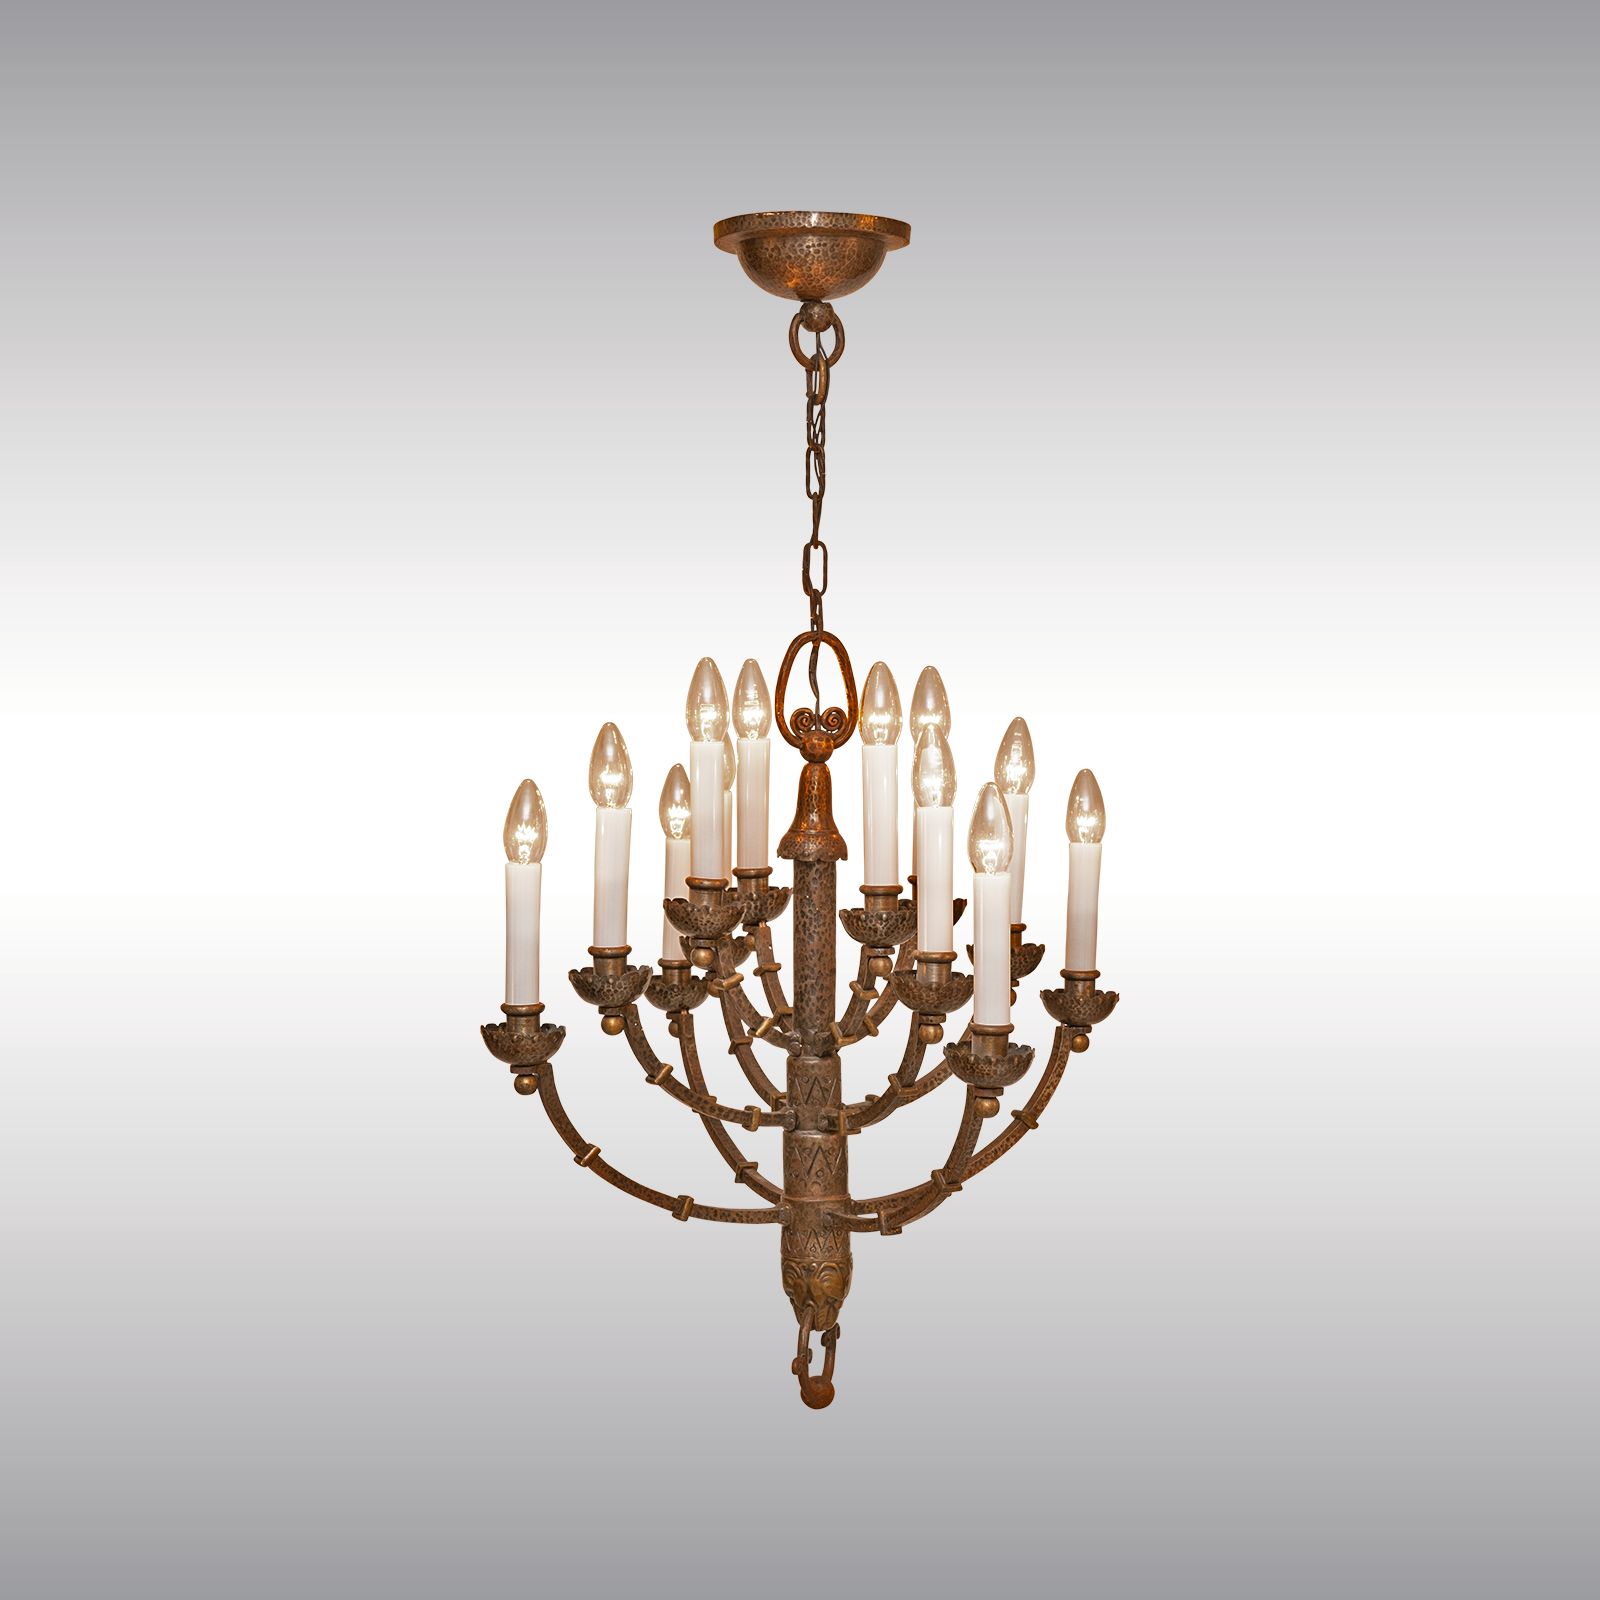 WOKA LAMPS VIENNA - OrderNr.: 50504|Art Deco Gothic Chandelier - Design: Austrian Mastercraft